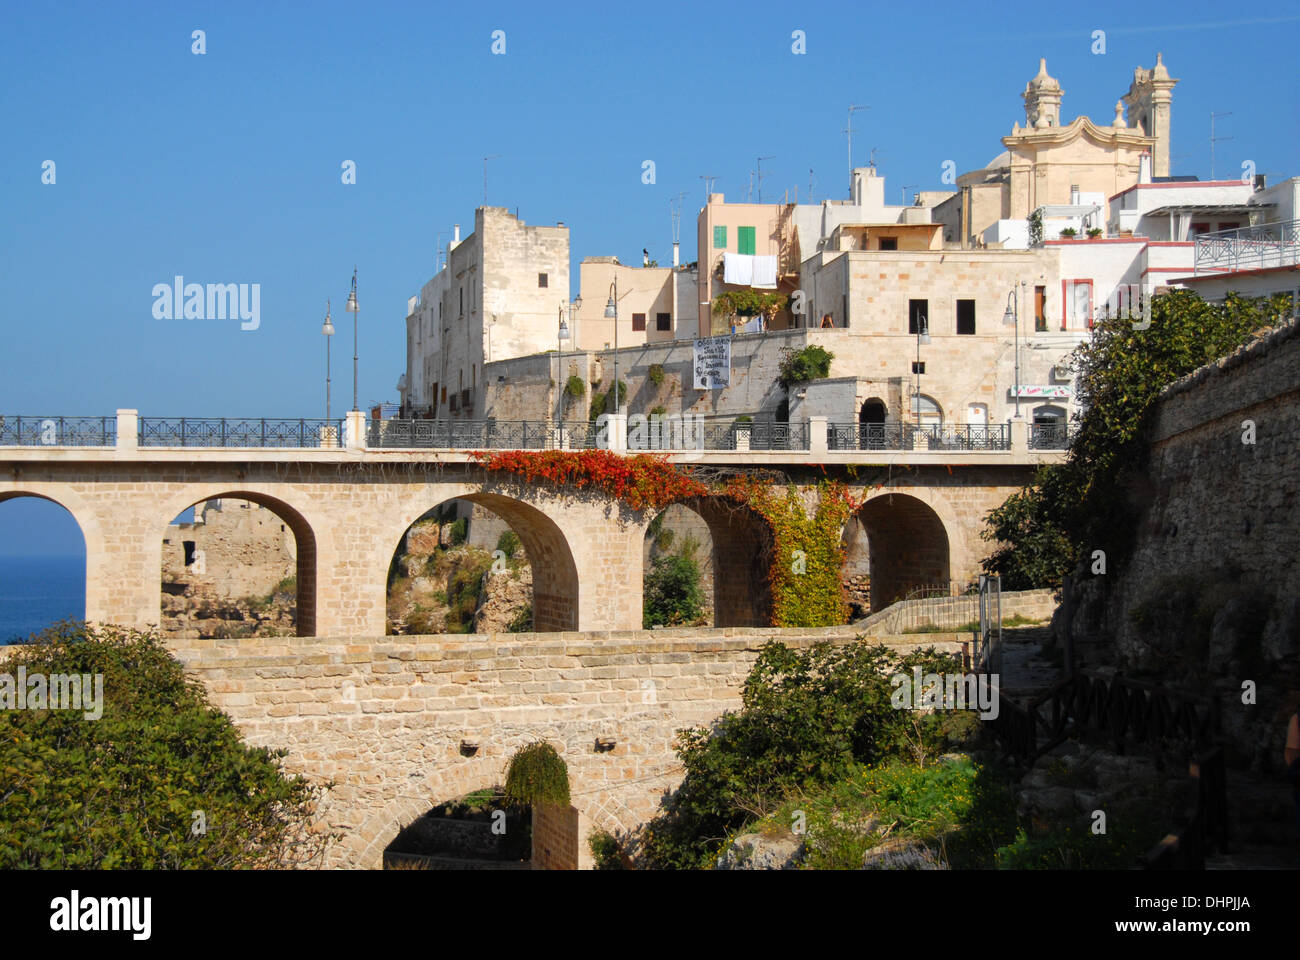 La ciudad de Otranto, Puglia, Italia Foto de stock